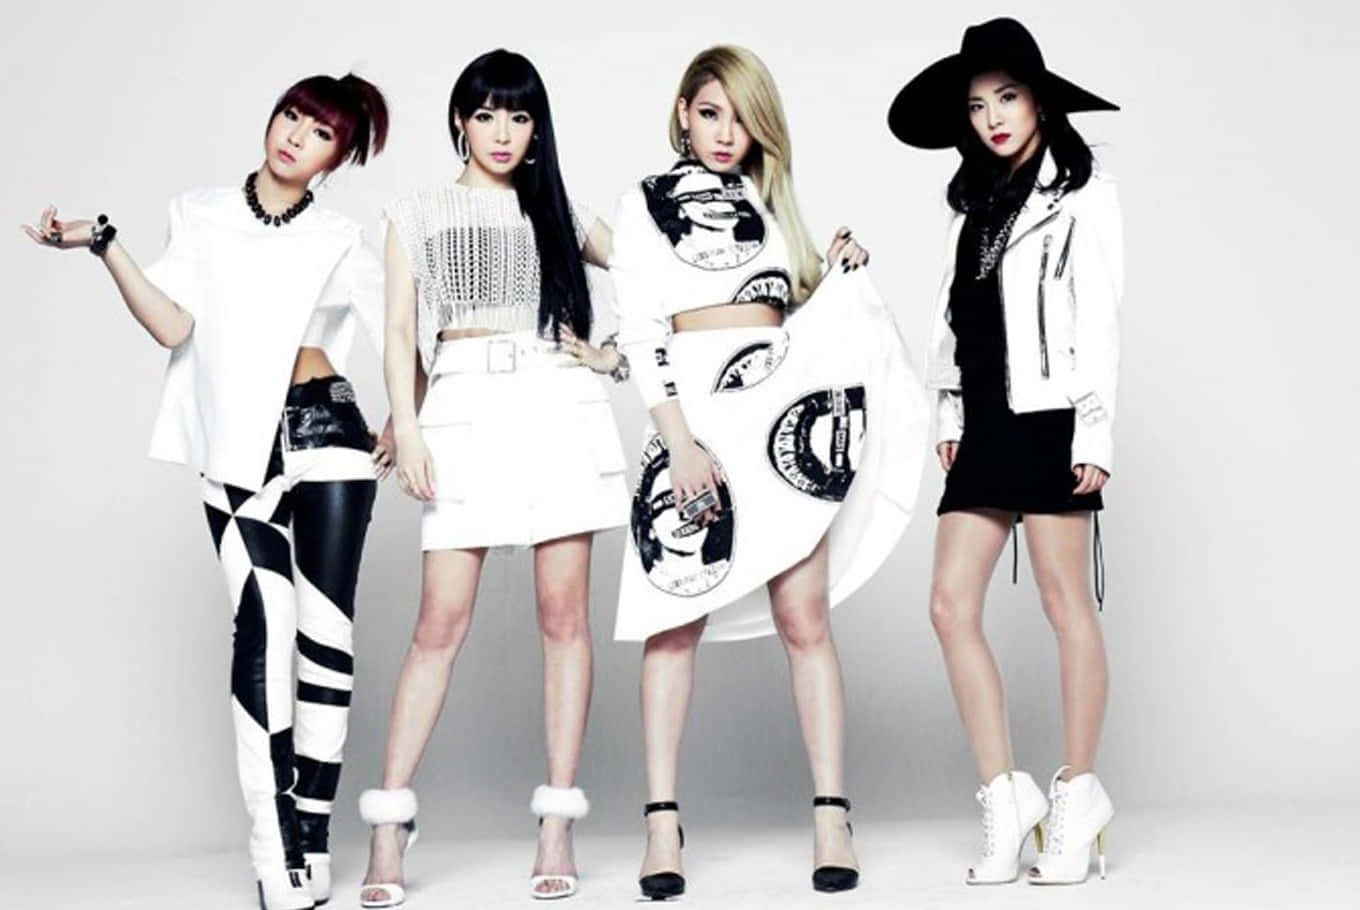 2NE1- South Korea’s popular K-Pop girl group